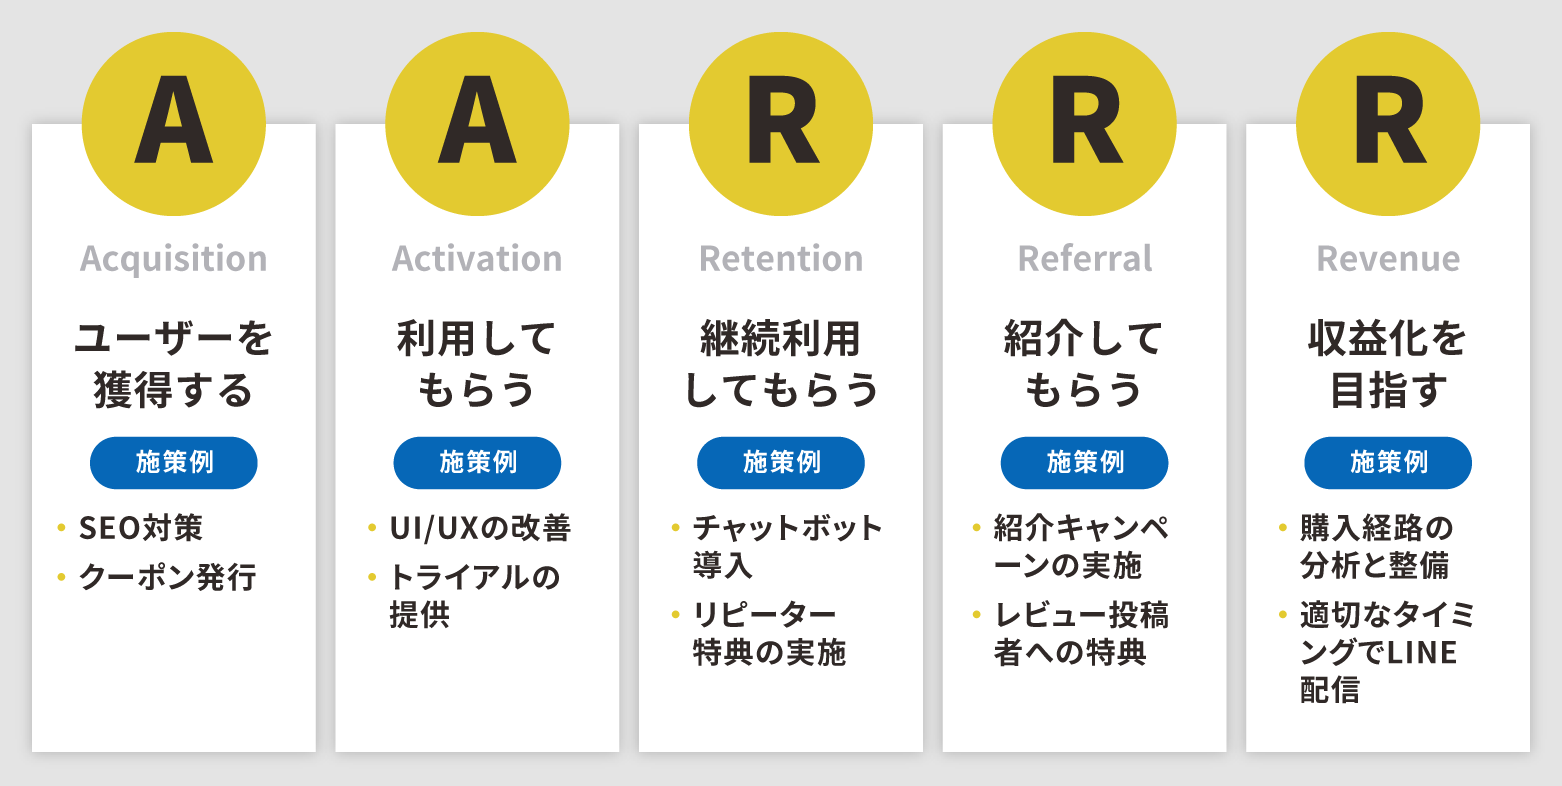 「AARRR（アー）」とはサービスの成長を5段階に分けたものの頭文字。施策例も。